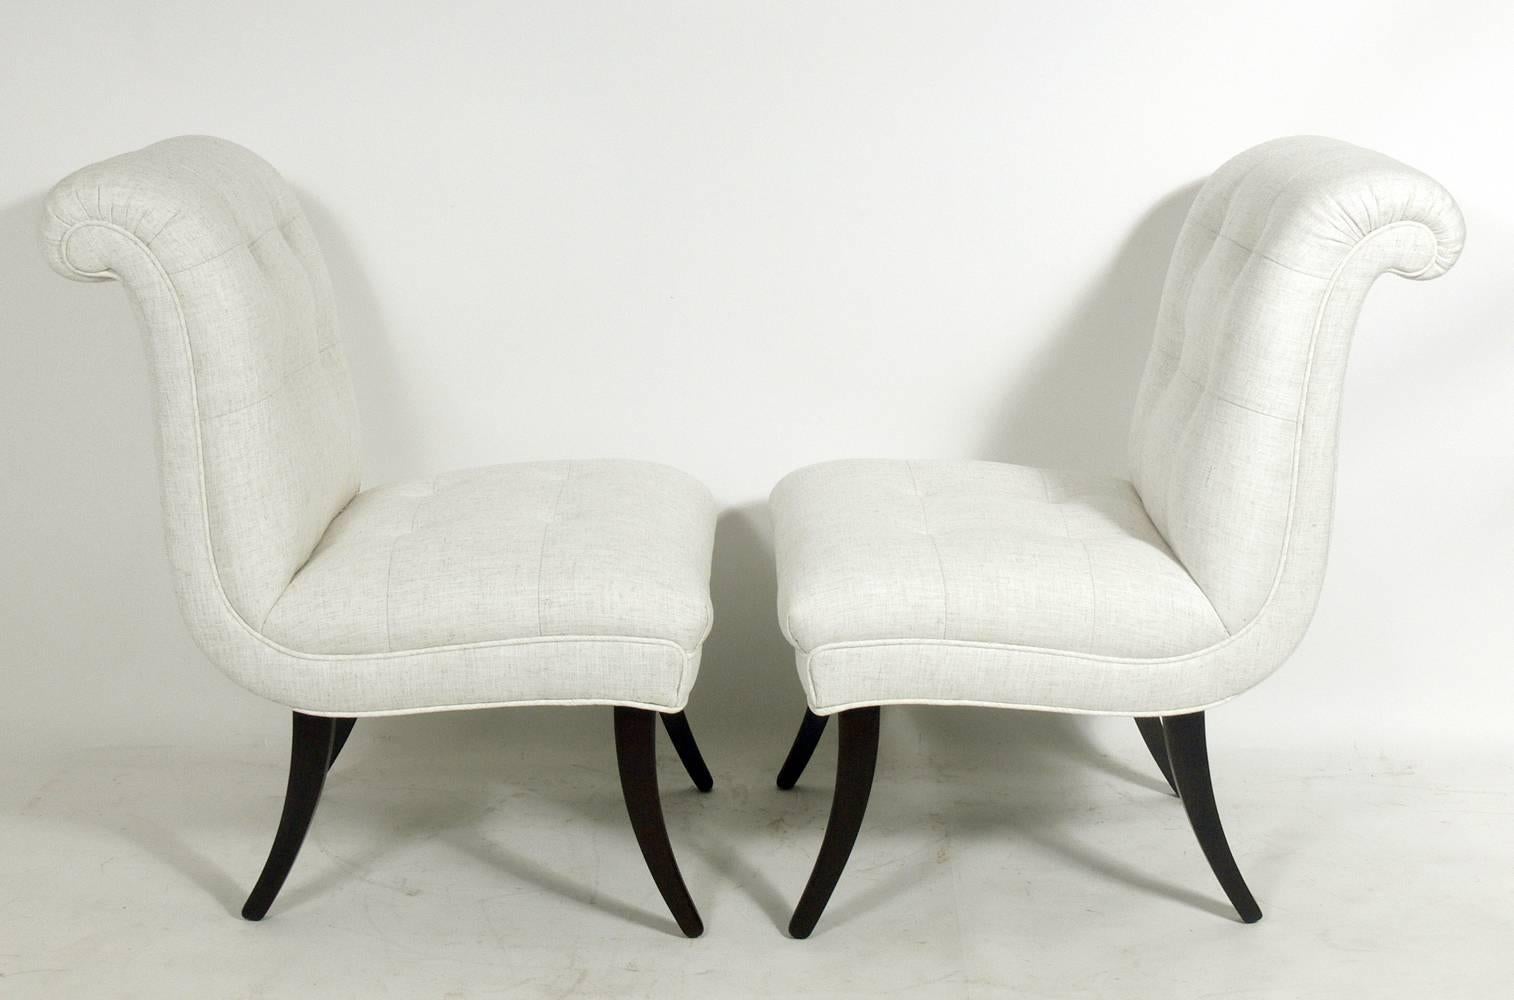 Paire de fauteuils pantoufles aux formes arrondies, américains, vers les années 1940. Une forme glamour avec des dossiers à volutes spectaculaires, des boutons touffetés et des pieds aux courbes sexy. Rembourré dans une tapisserie de style lin